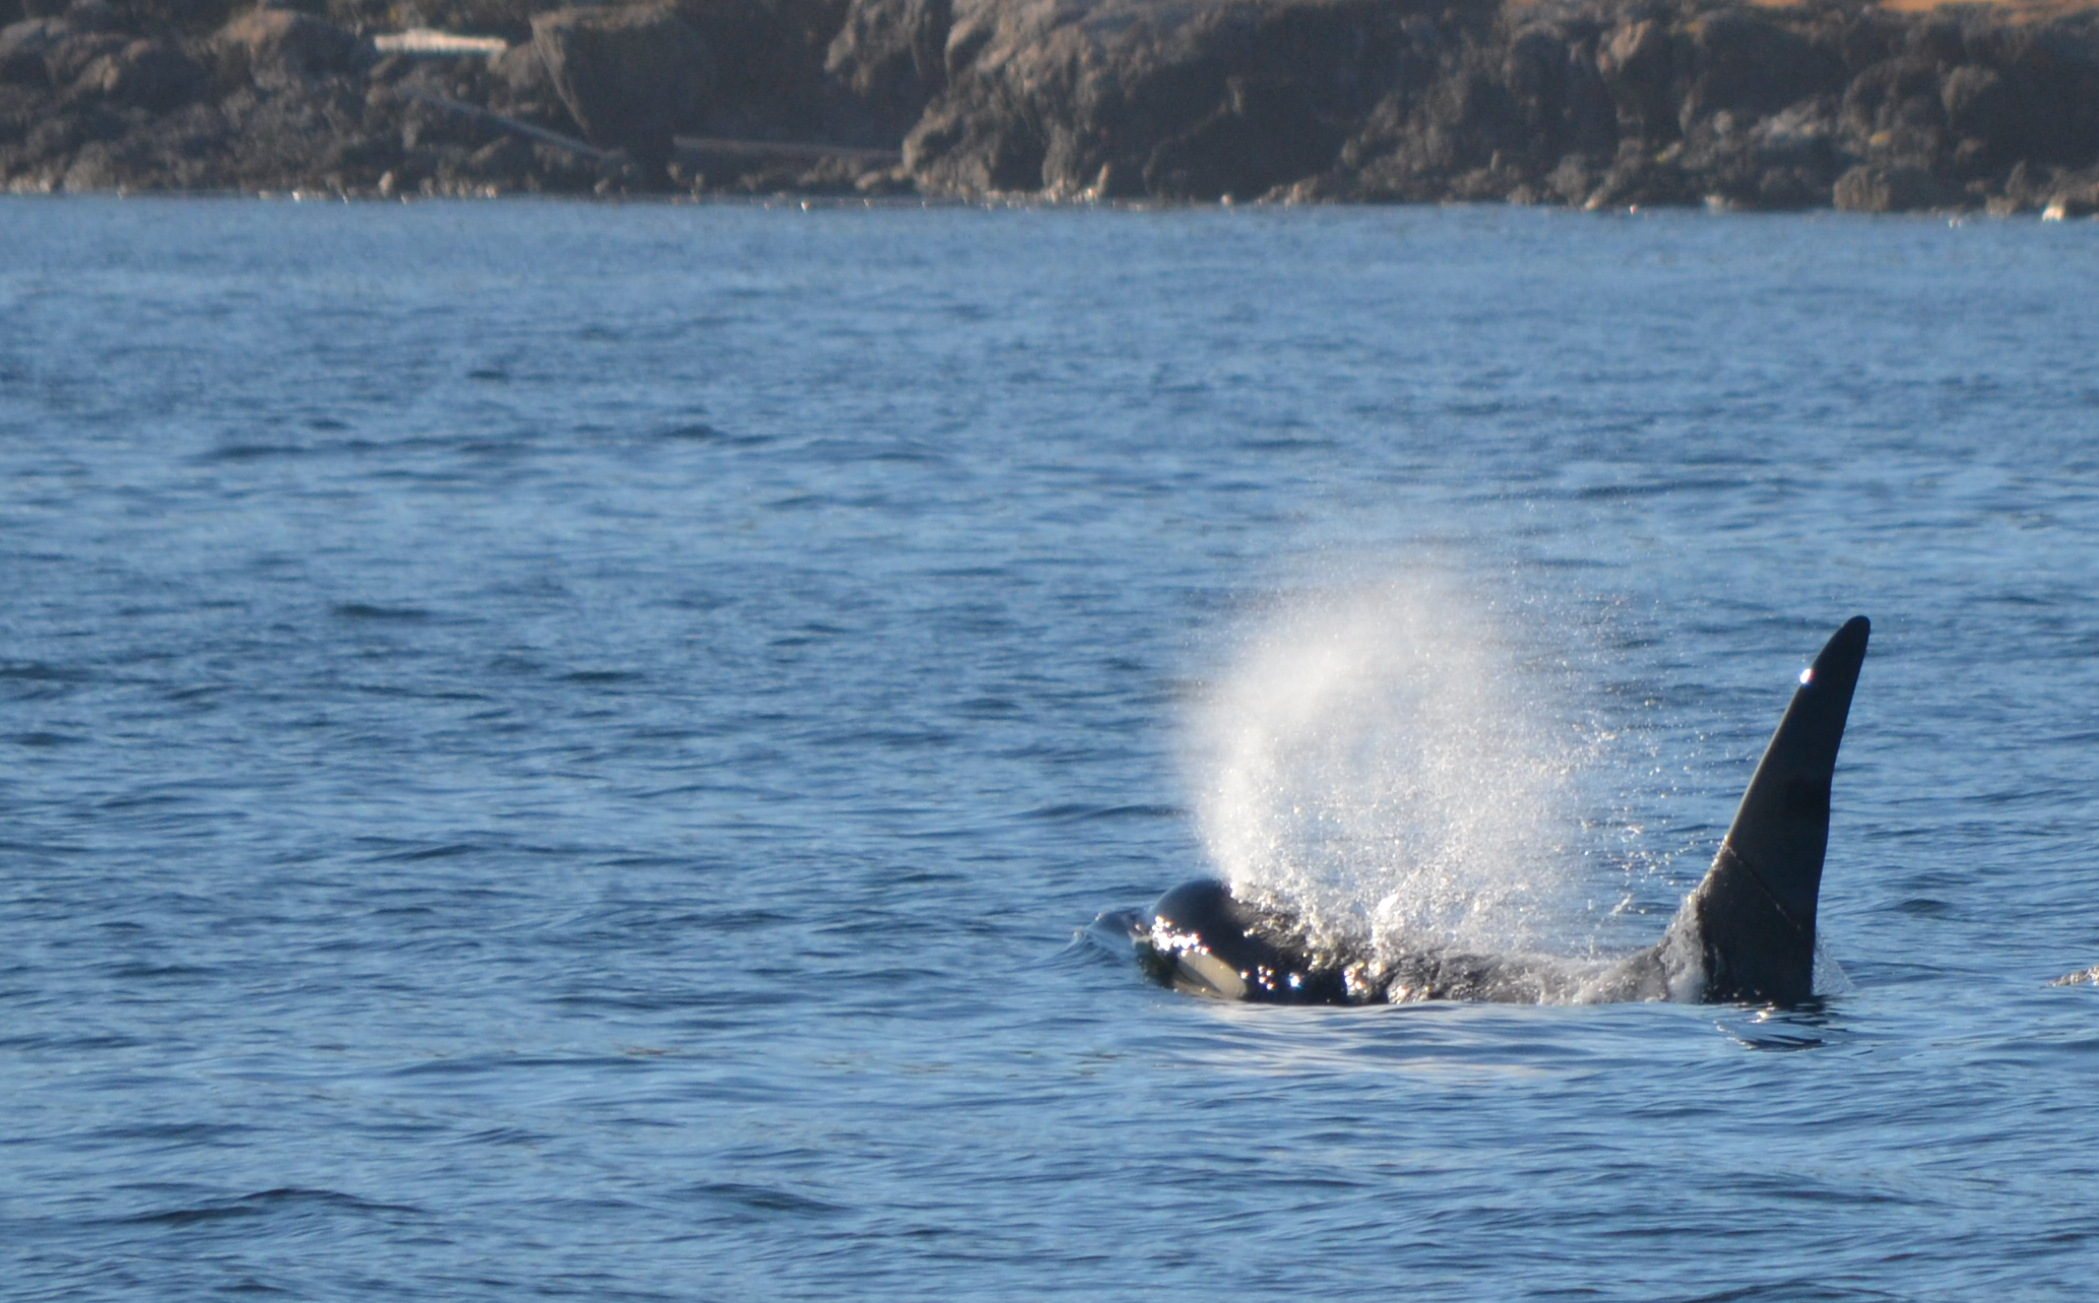 Orca near San Juan Island, WA